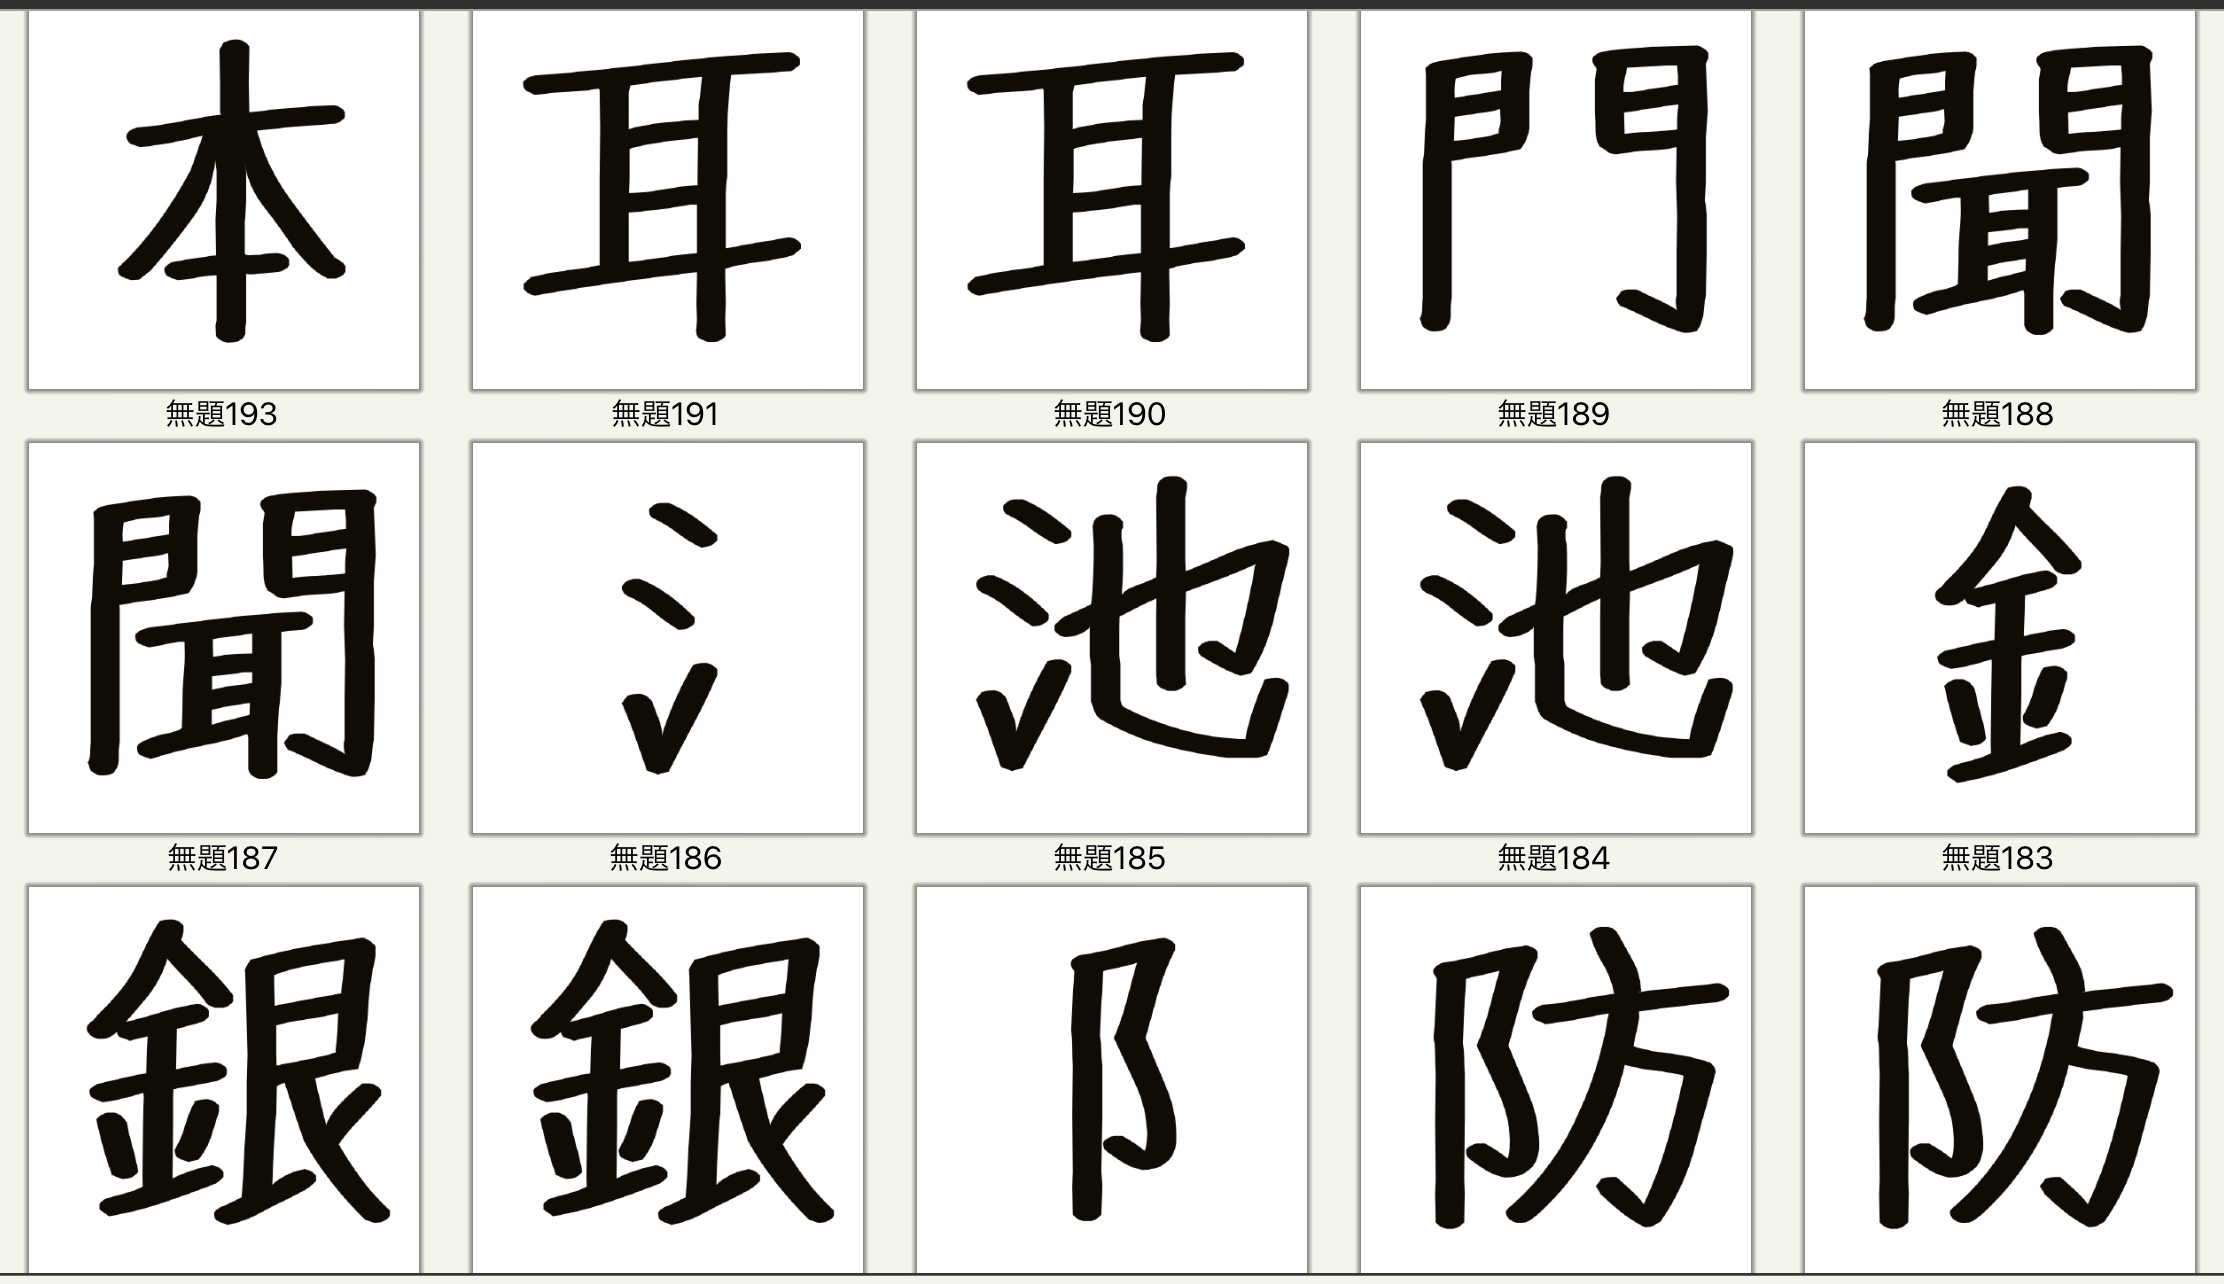 へん と つくり 漢字